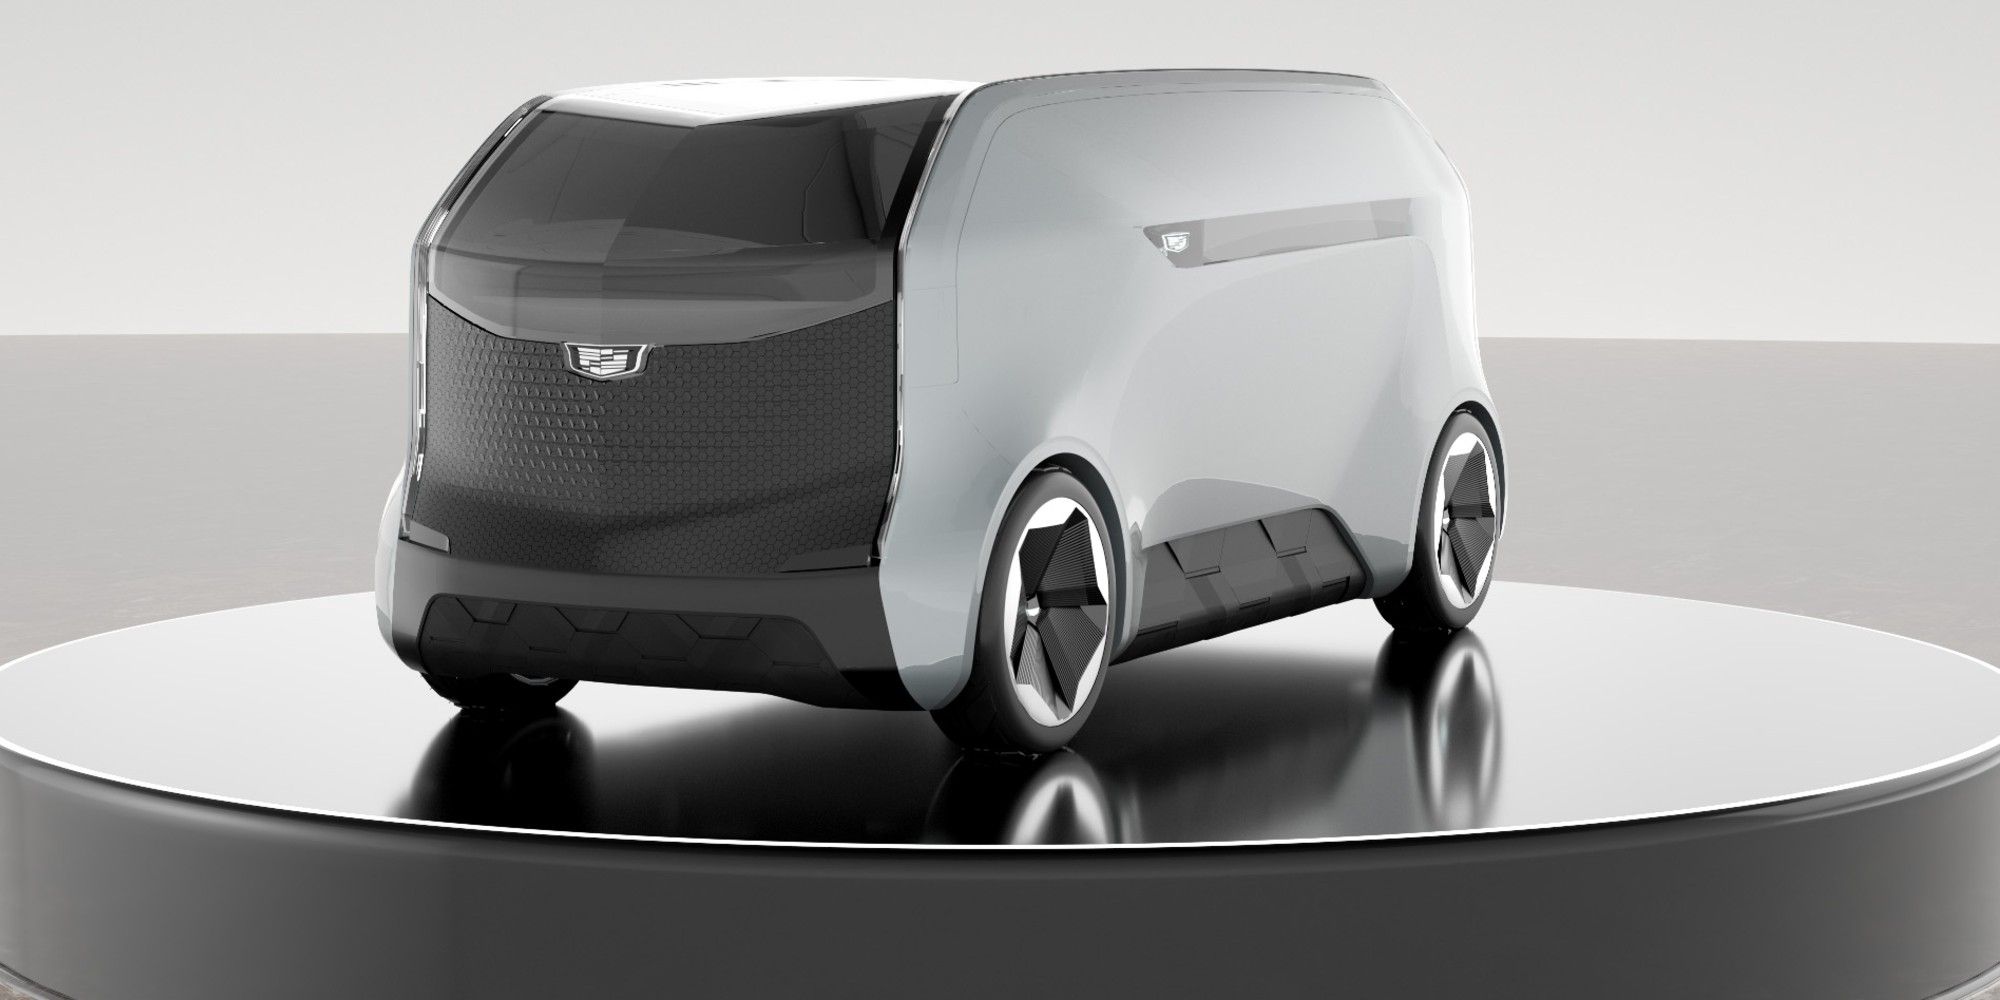 GM autonomous vehicle concept